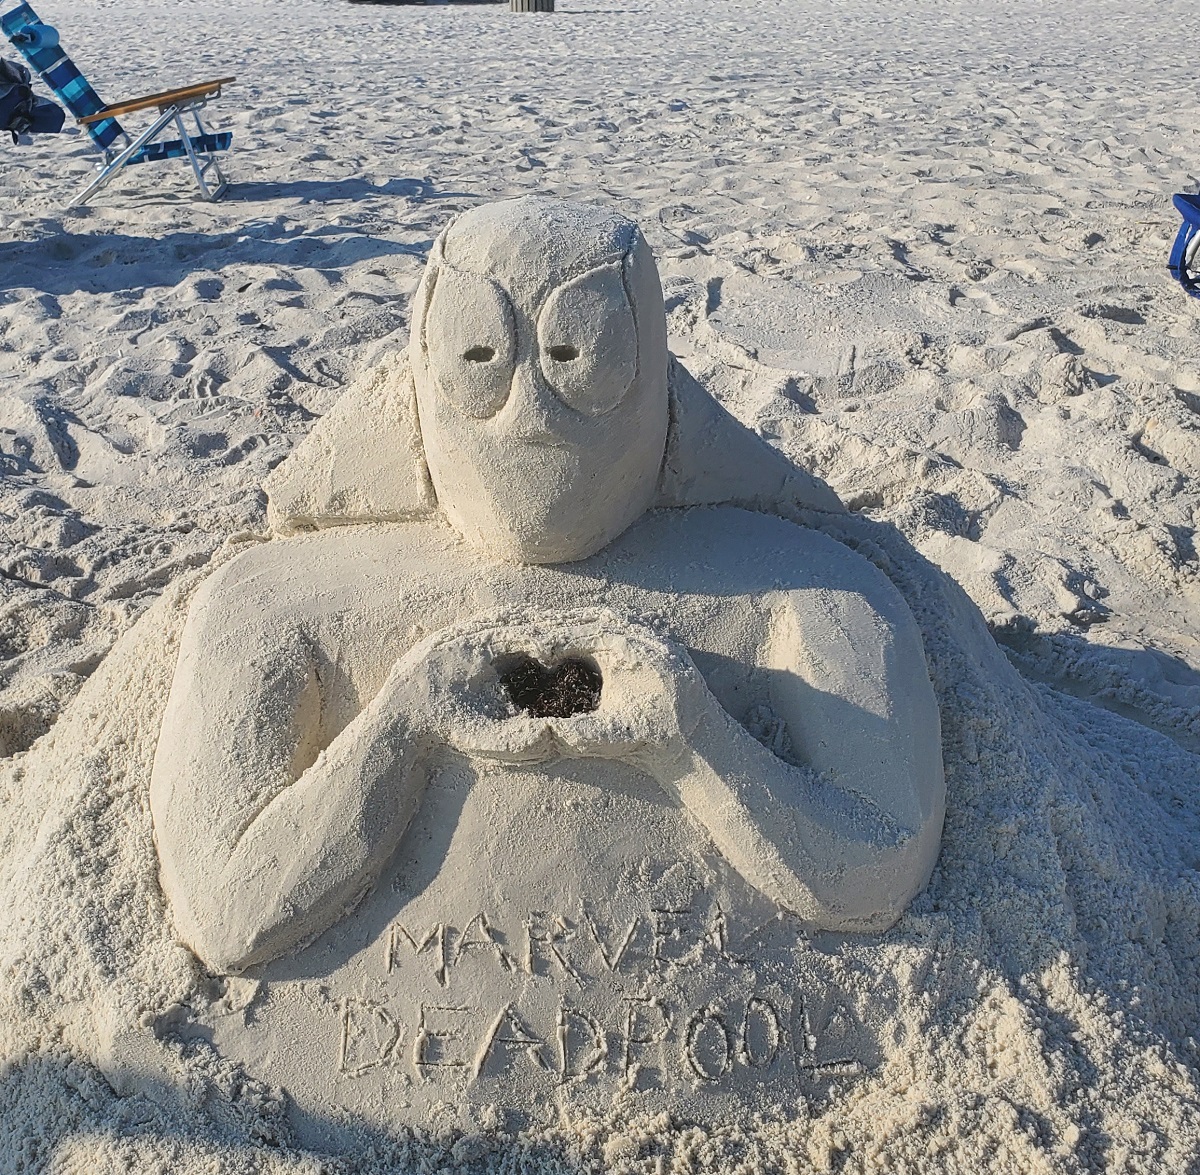 Deadpool as a sand sculpture